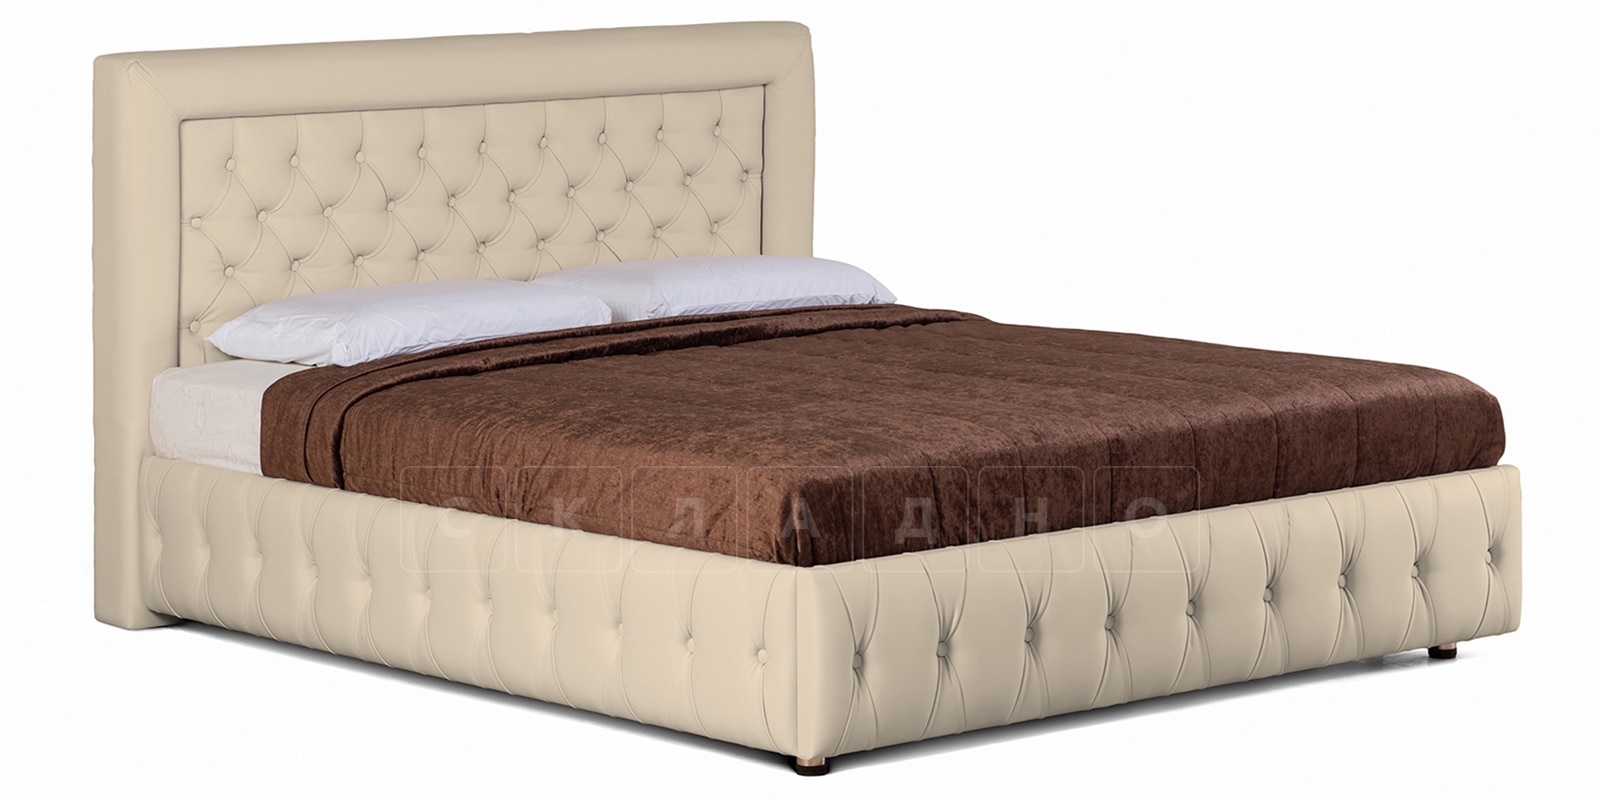 Мягкая кровать Малибу 160см экокожа бежевый вариант 7-2 фото 1 | интернет-магазин Складно